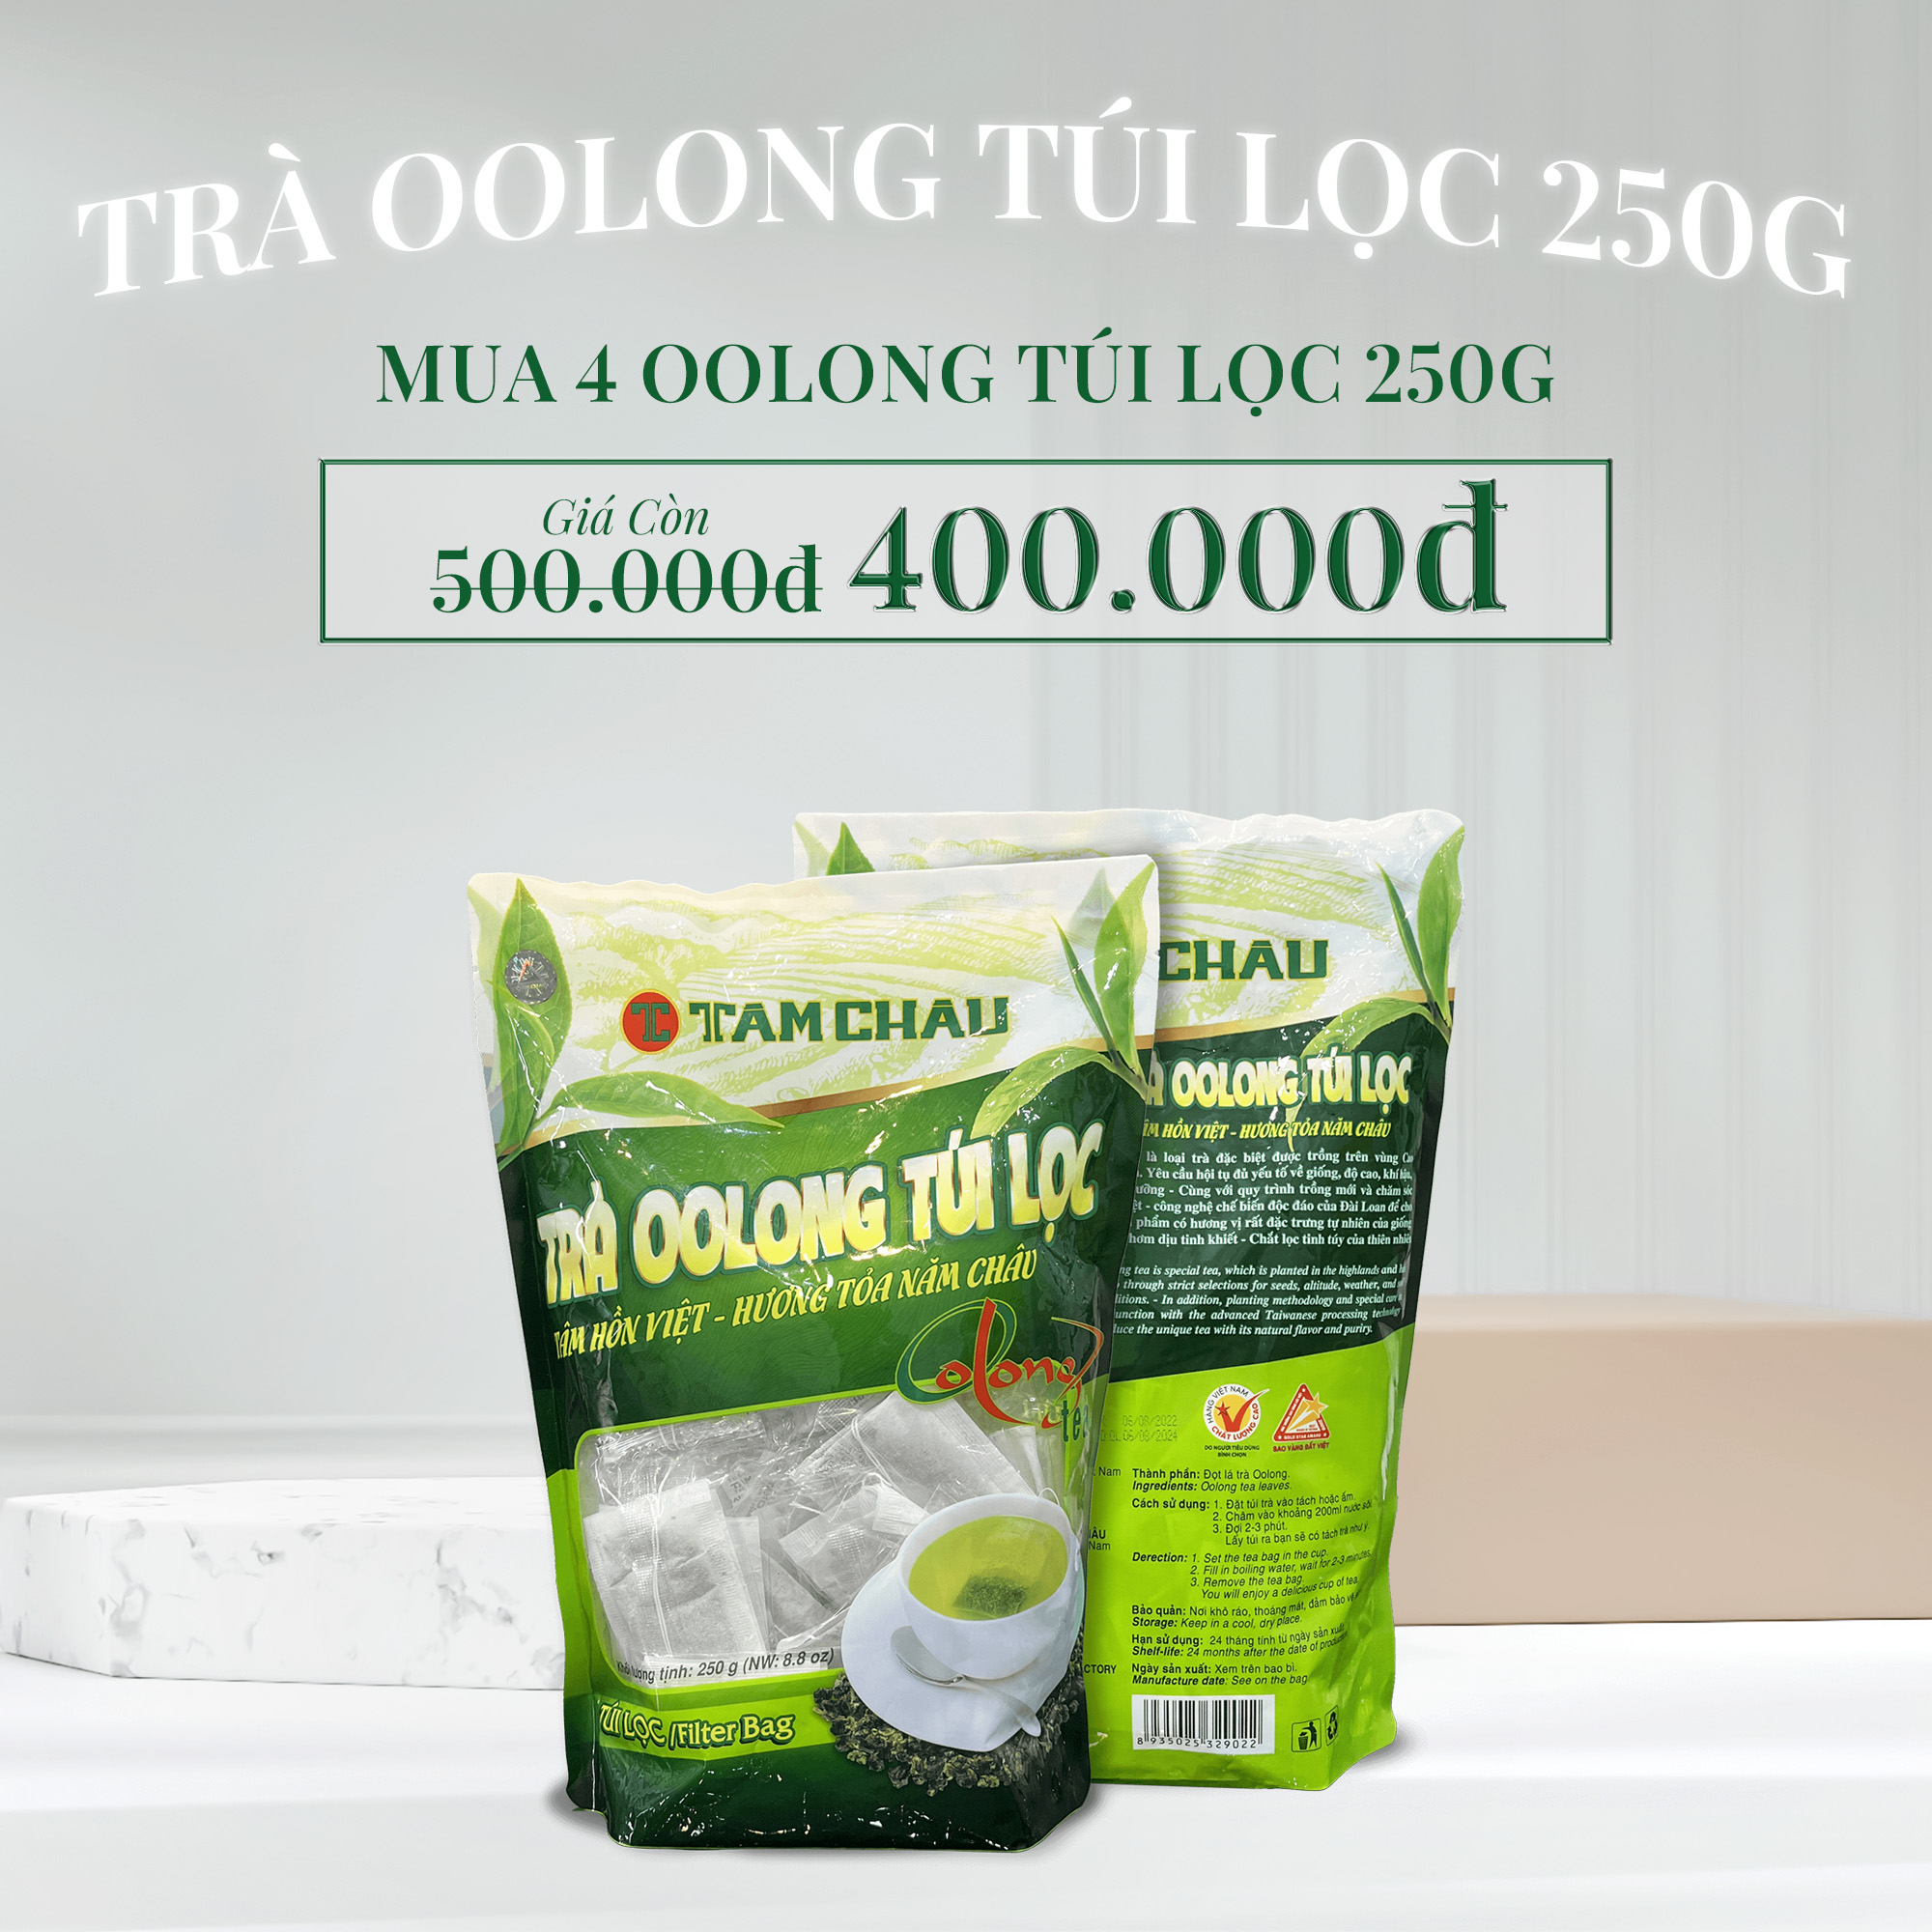 Combo ưu đãi trà Oolong túi lọc gói 250 g